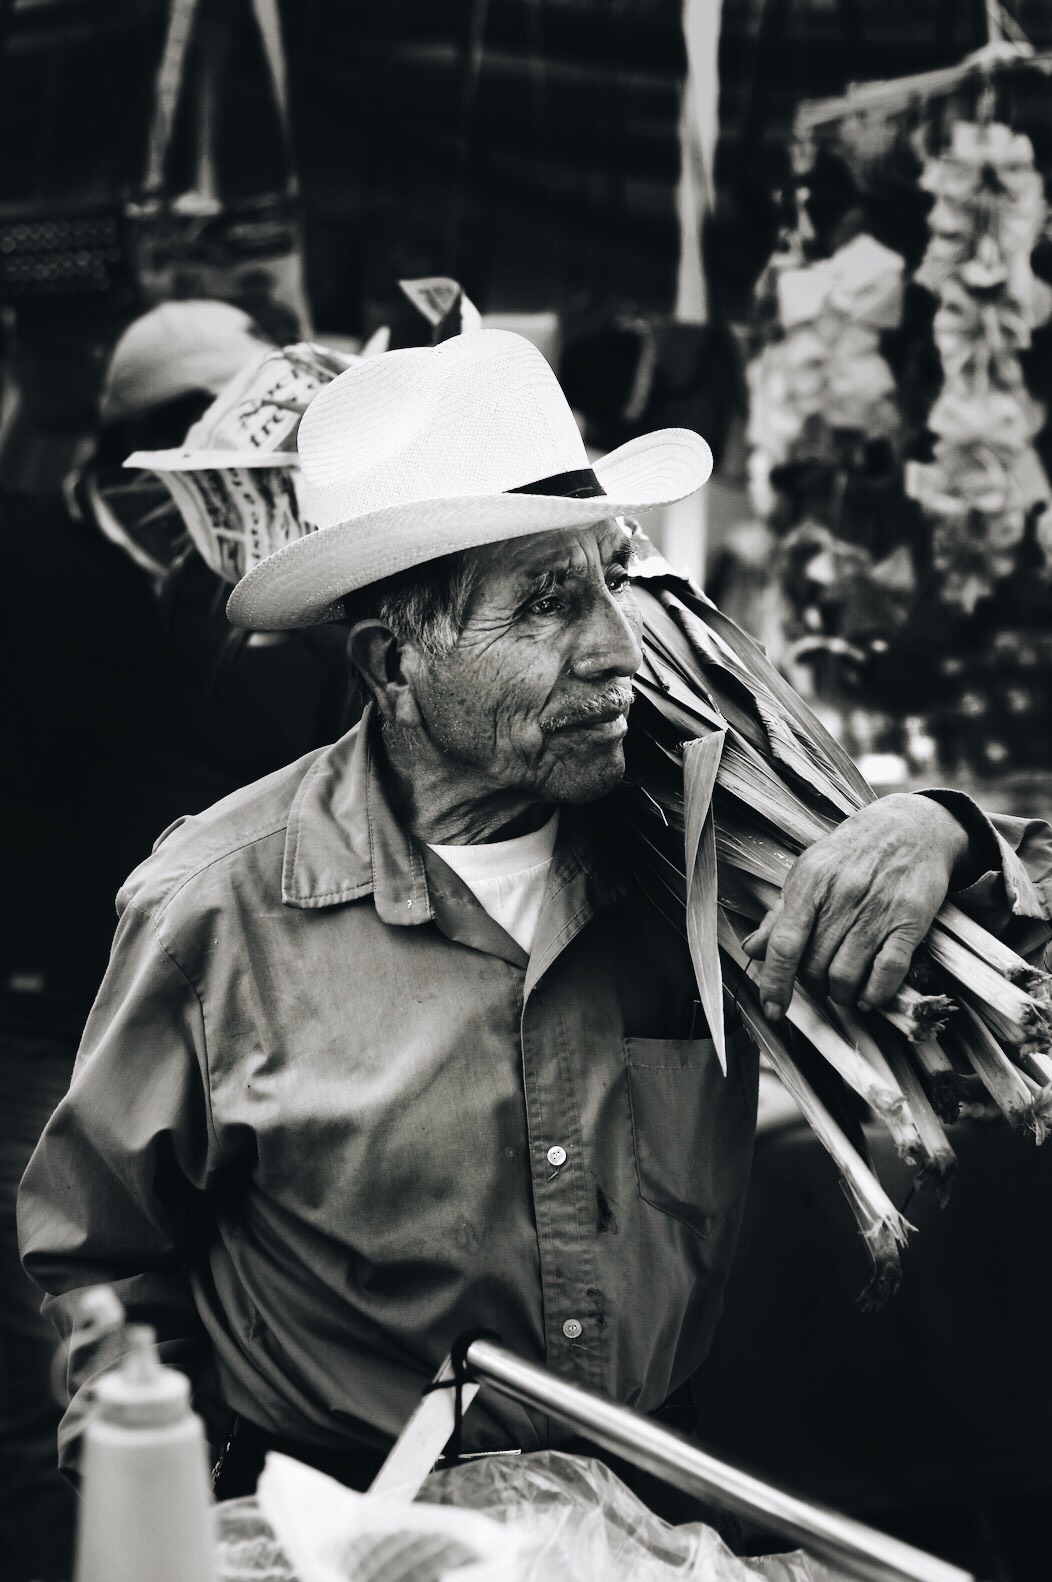  Día de mercado - Tlacolula de Matamoros 